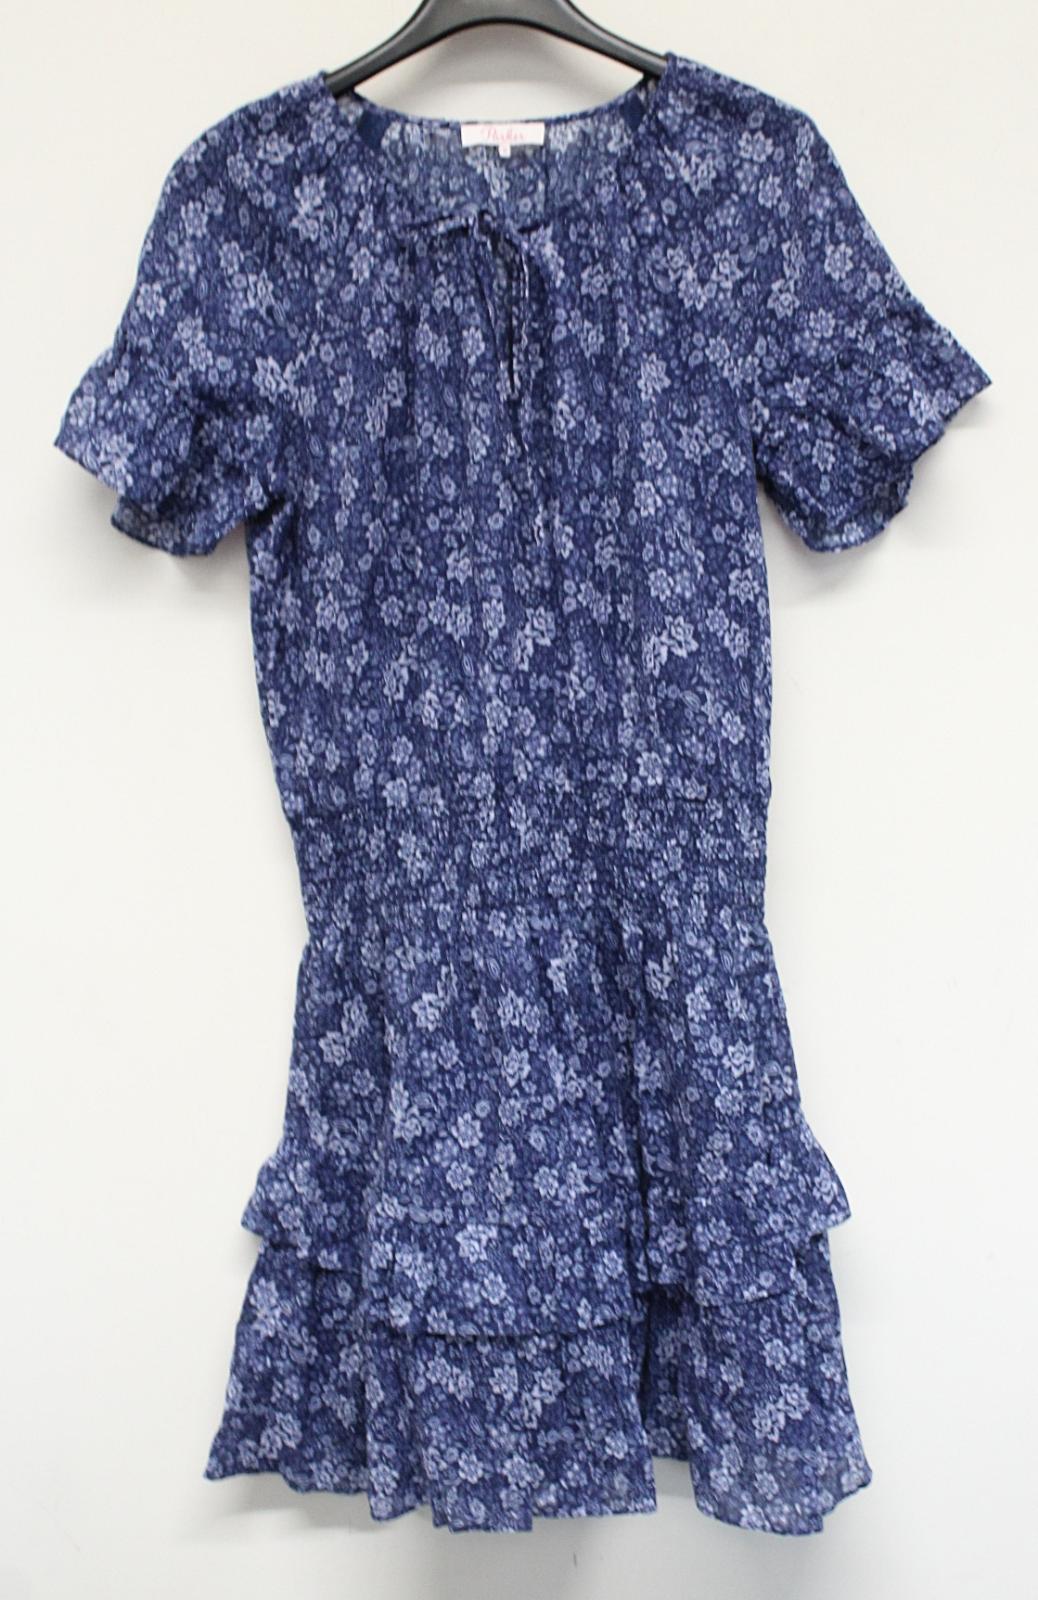 PARKER Ladies Queenie Print Navy Blue Cotton Ruffle Floral Mini Dress M